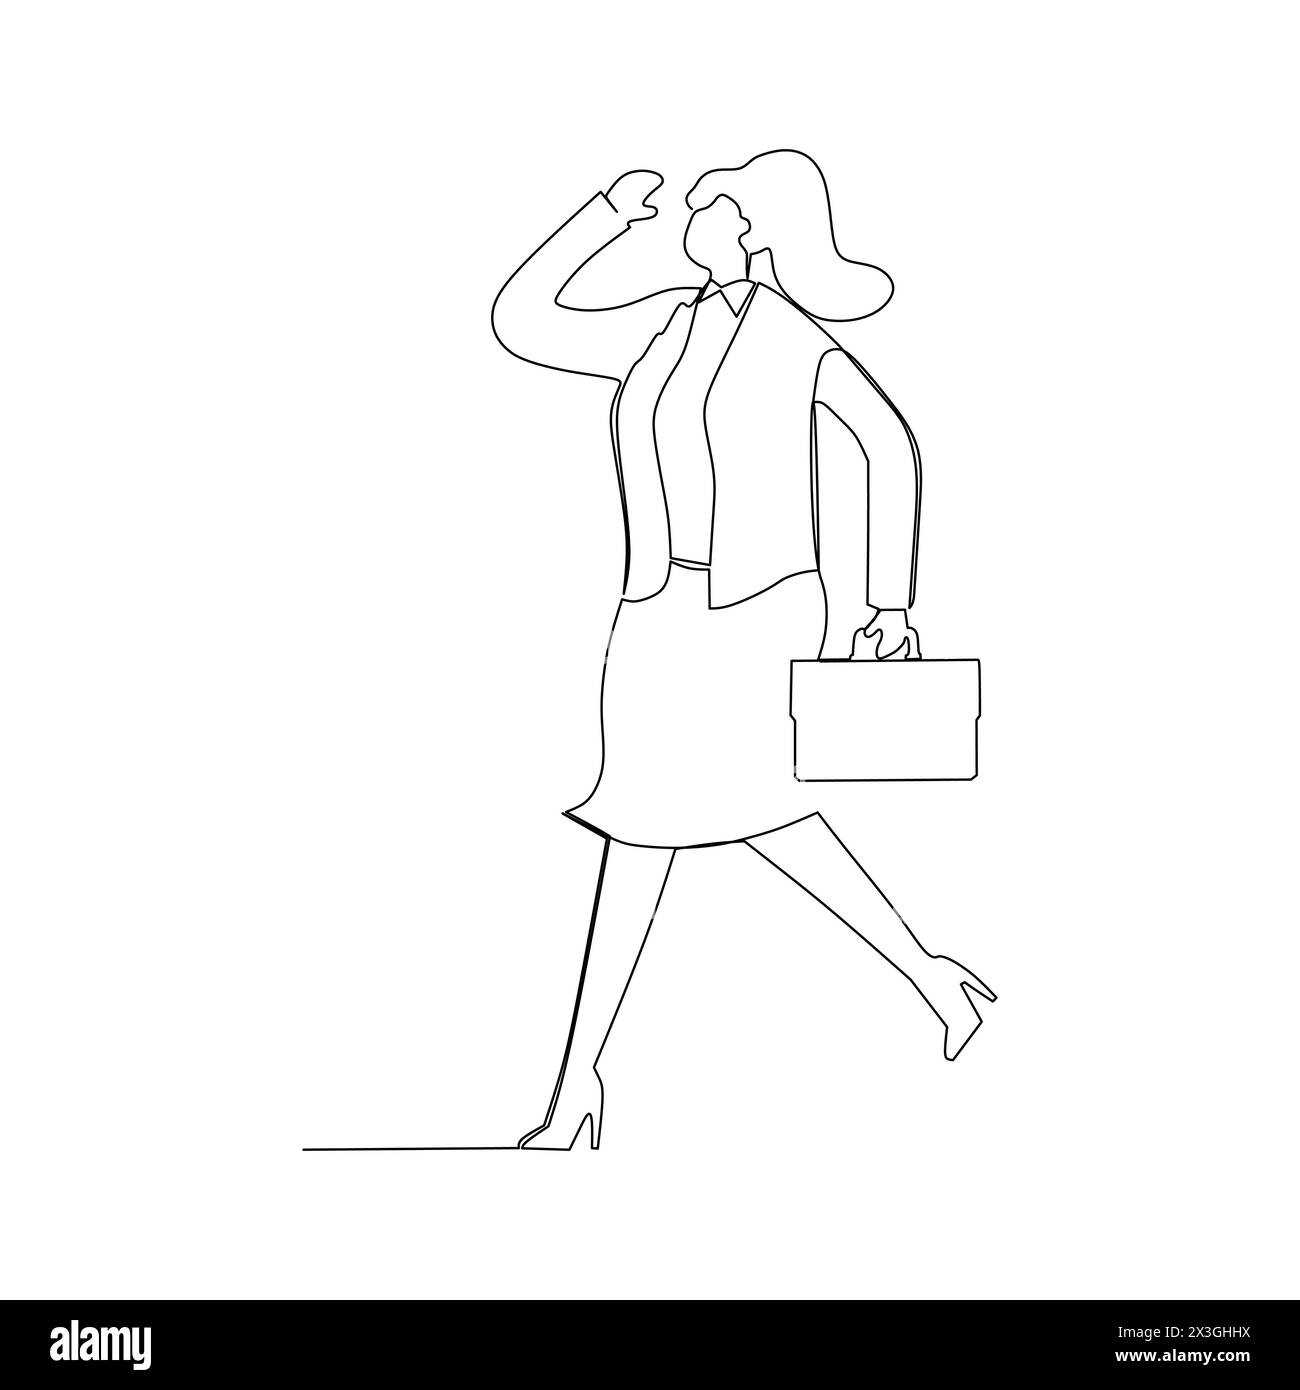 Durchgehende Linienzeichnung einer Geschäftsfrau im Cartoon-Stil, die in Blazer und Aktentasche läuft. Vertrauen in das Geschäftskonzept. Stock Vektor